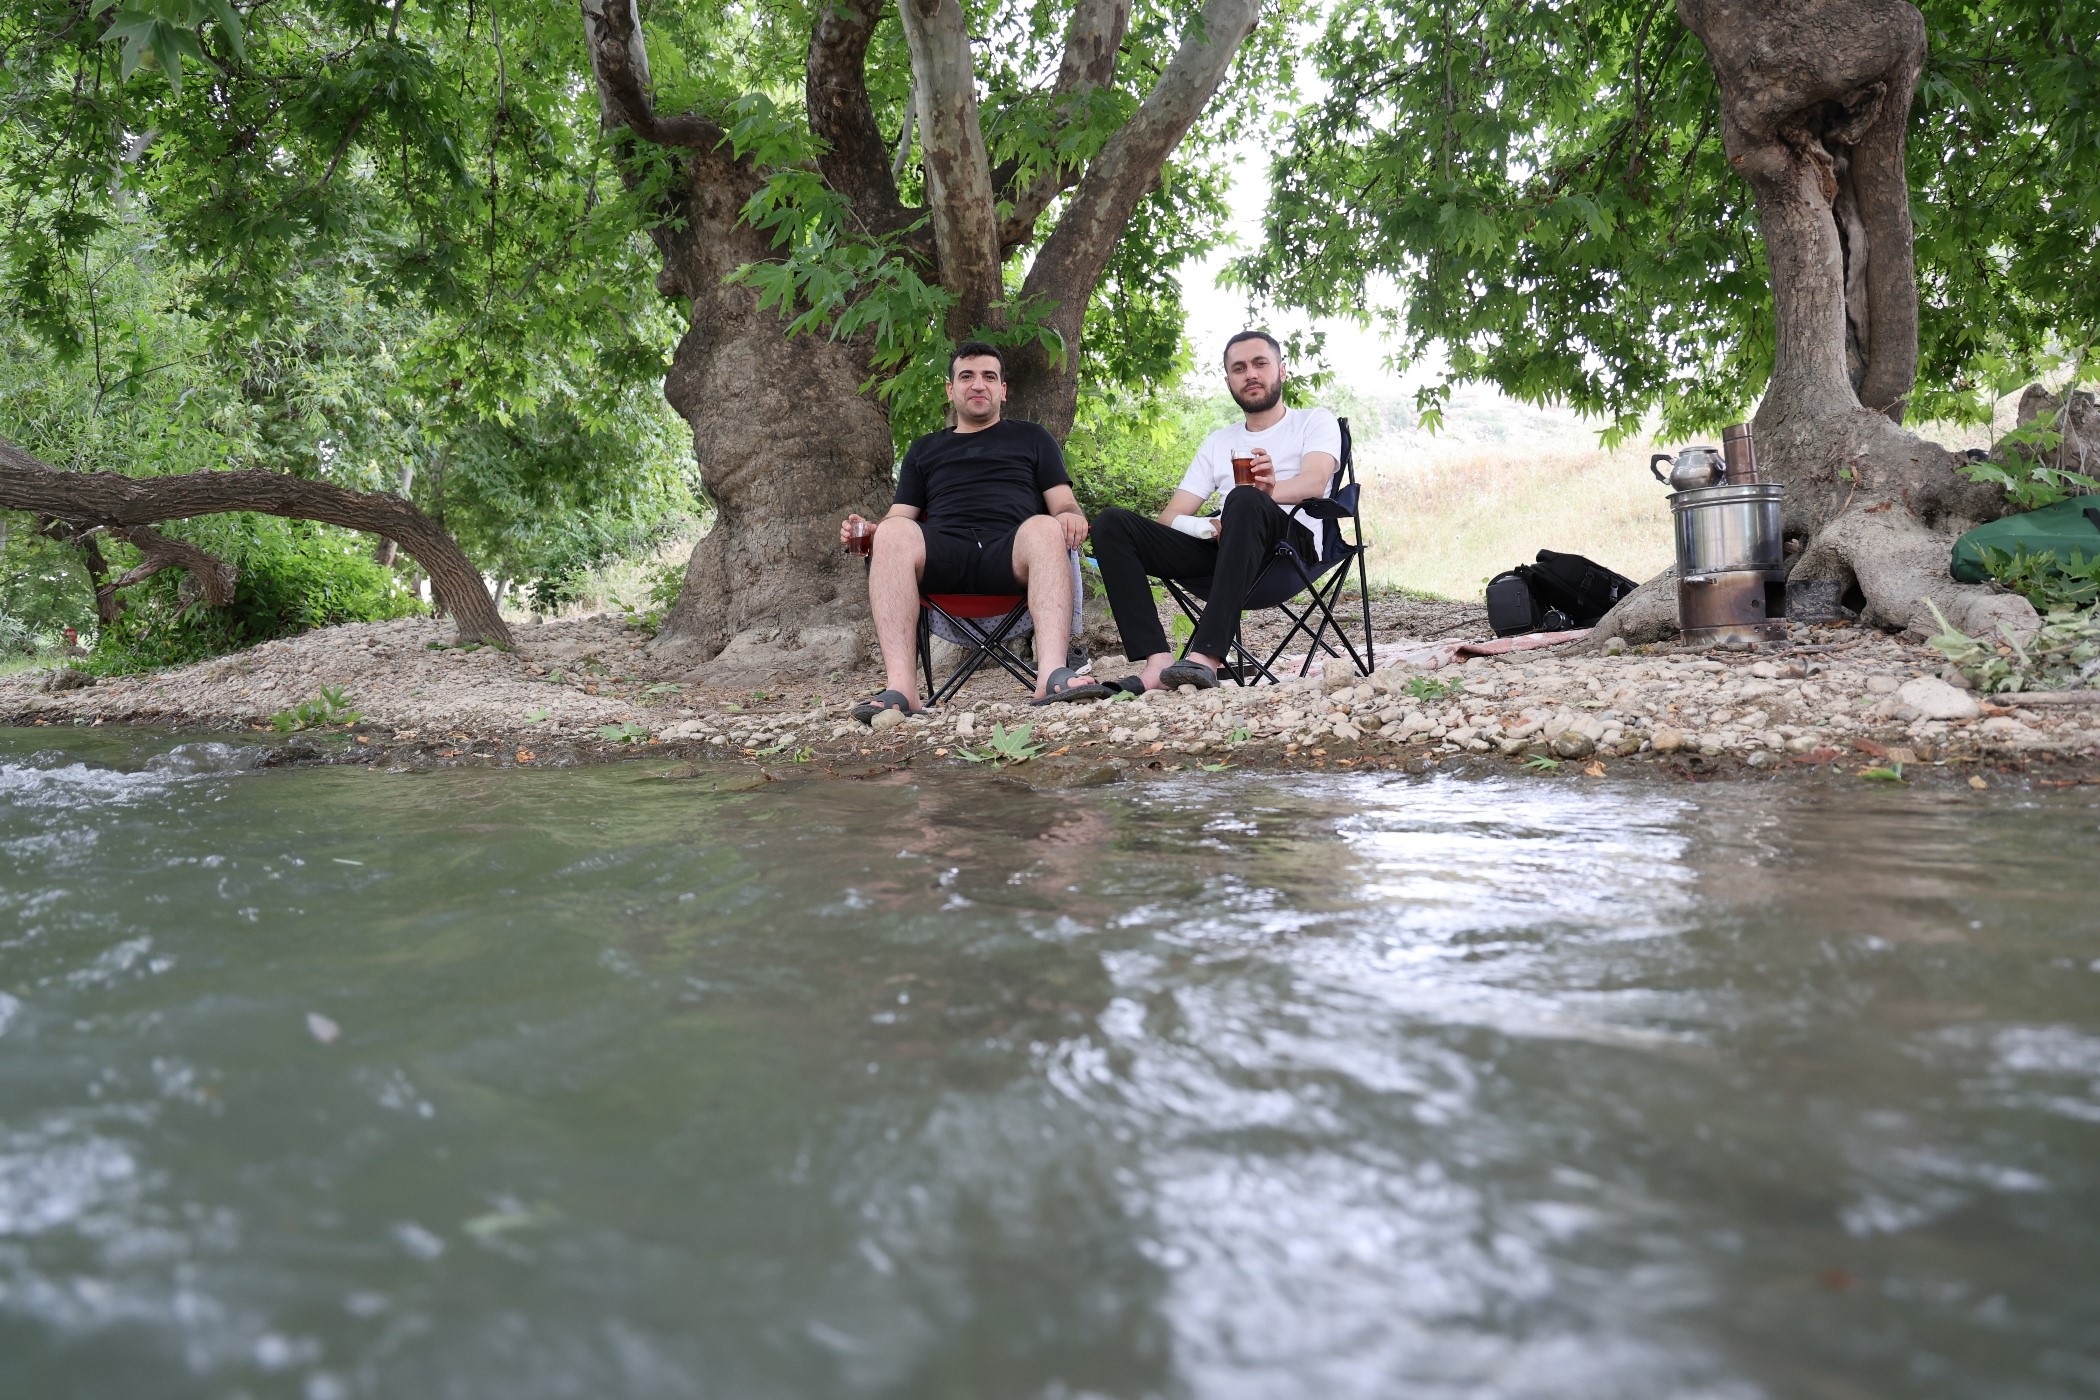 Diyarbakır’da sıcaktan bunalanlar sulak ve serin yerleri tercih ediyor